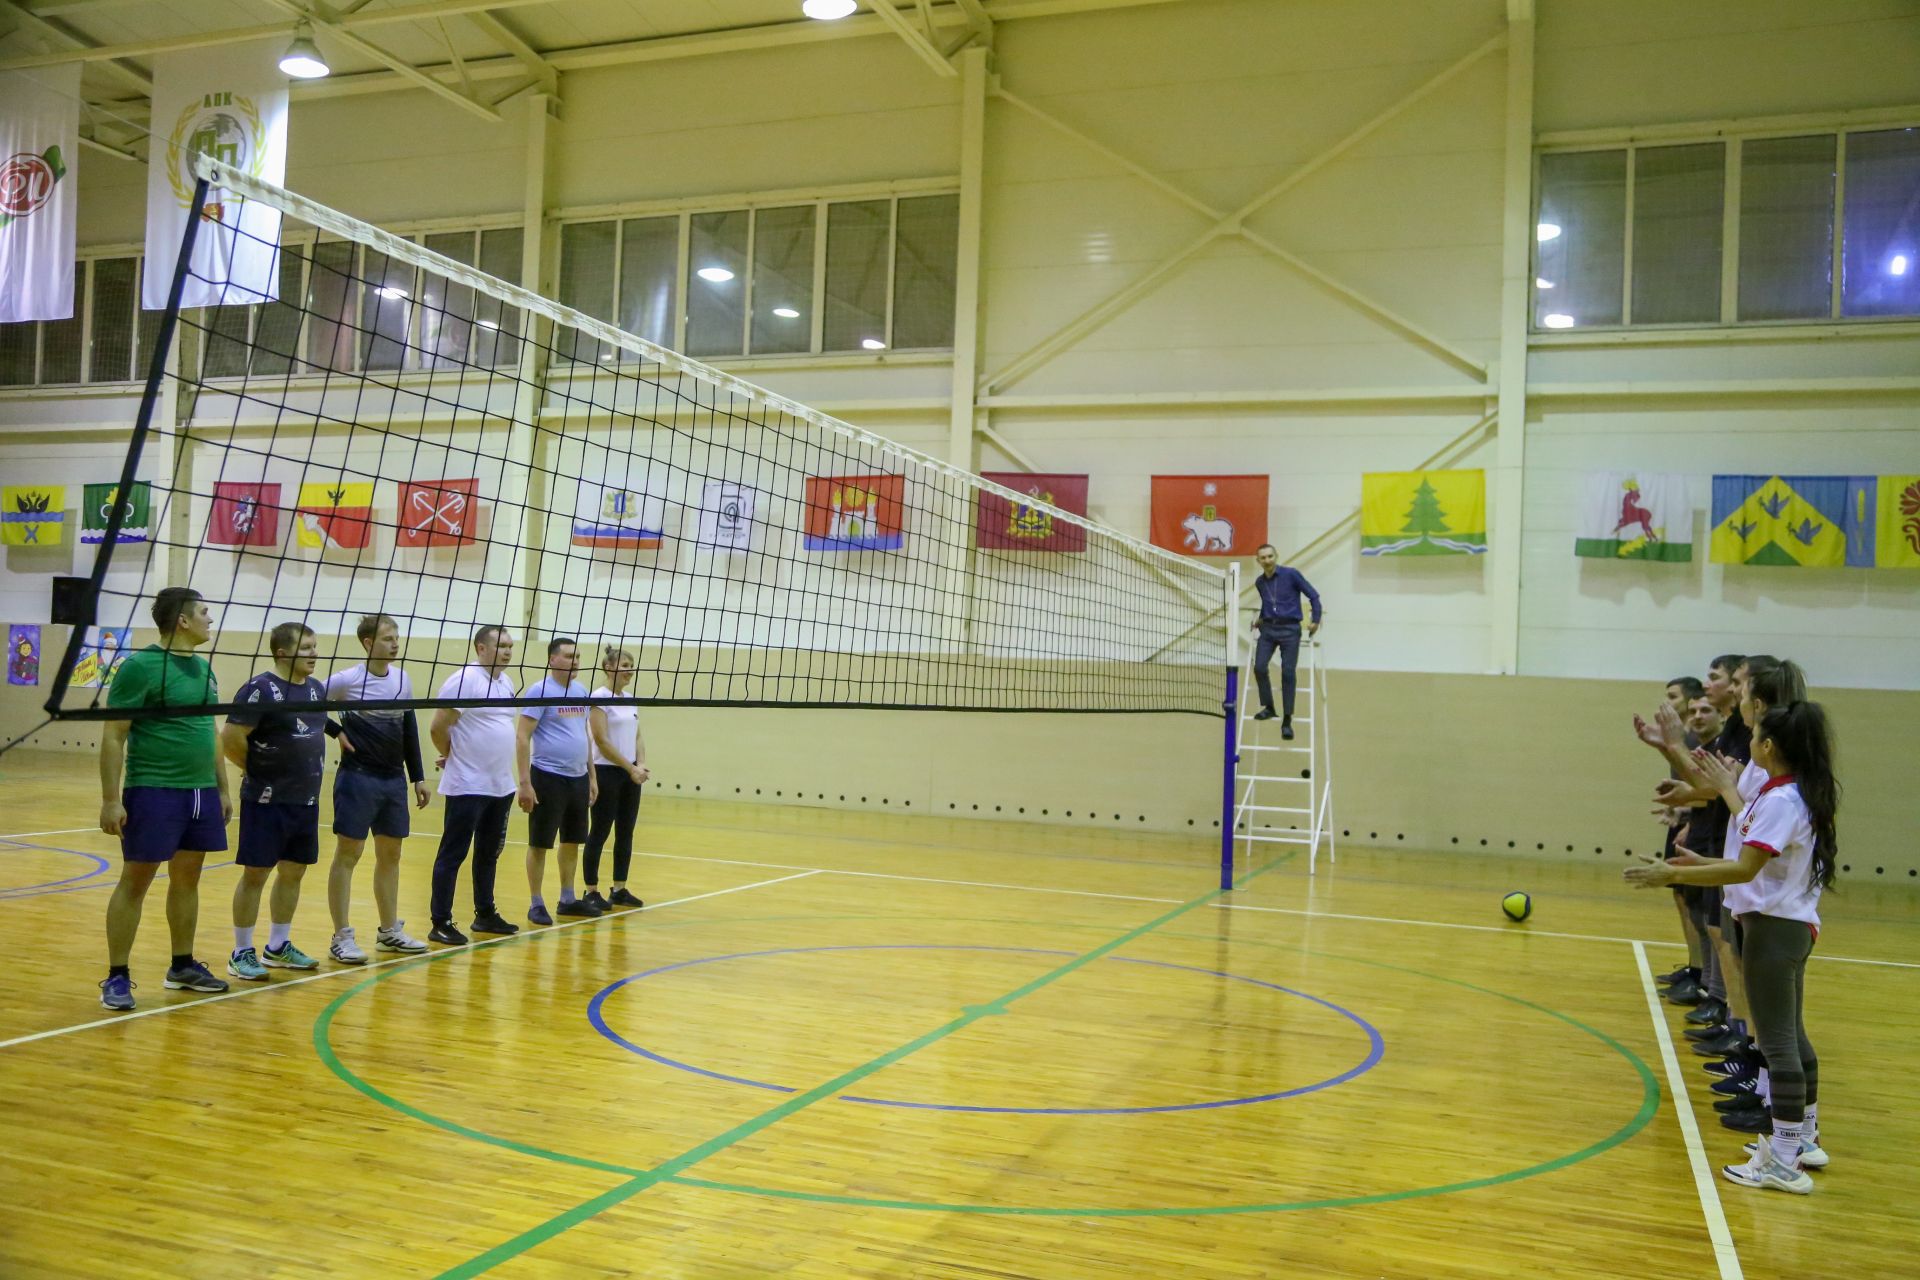 Соревнования по волейболу среди команд Группы компаний "РМ Агро"